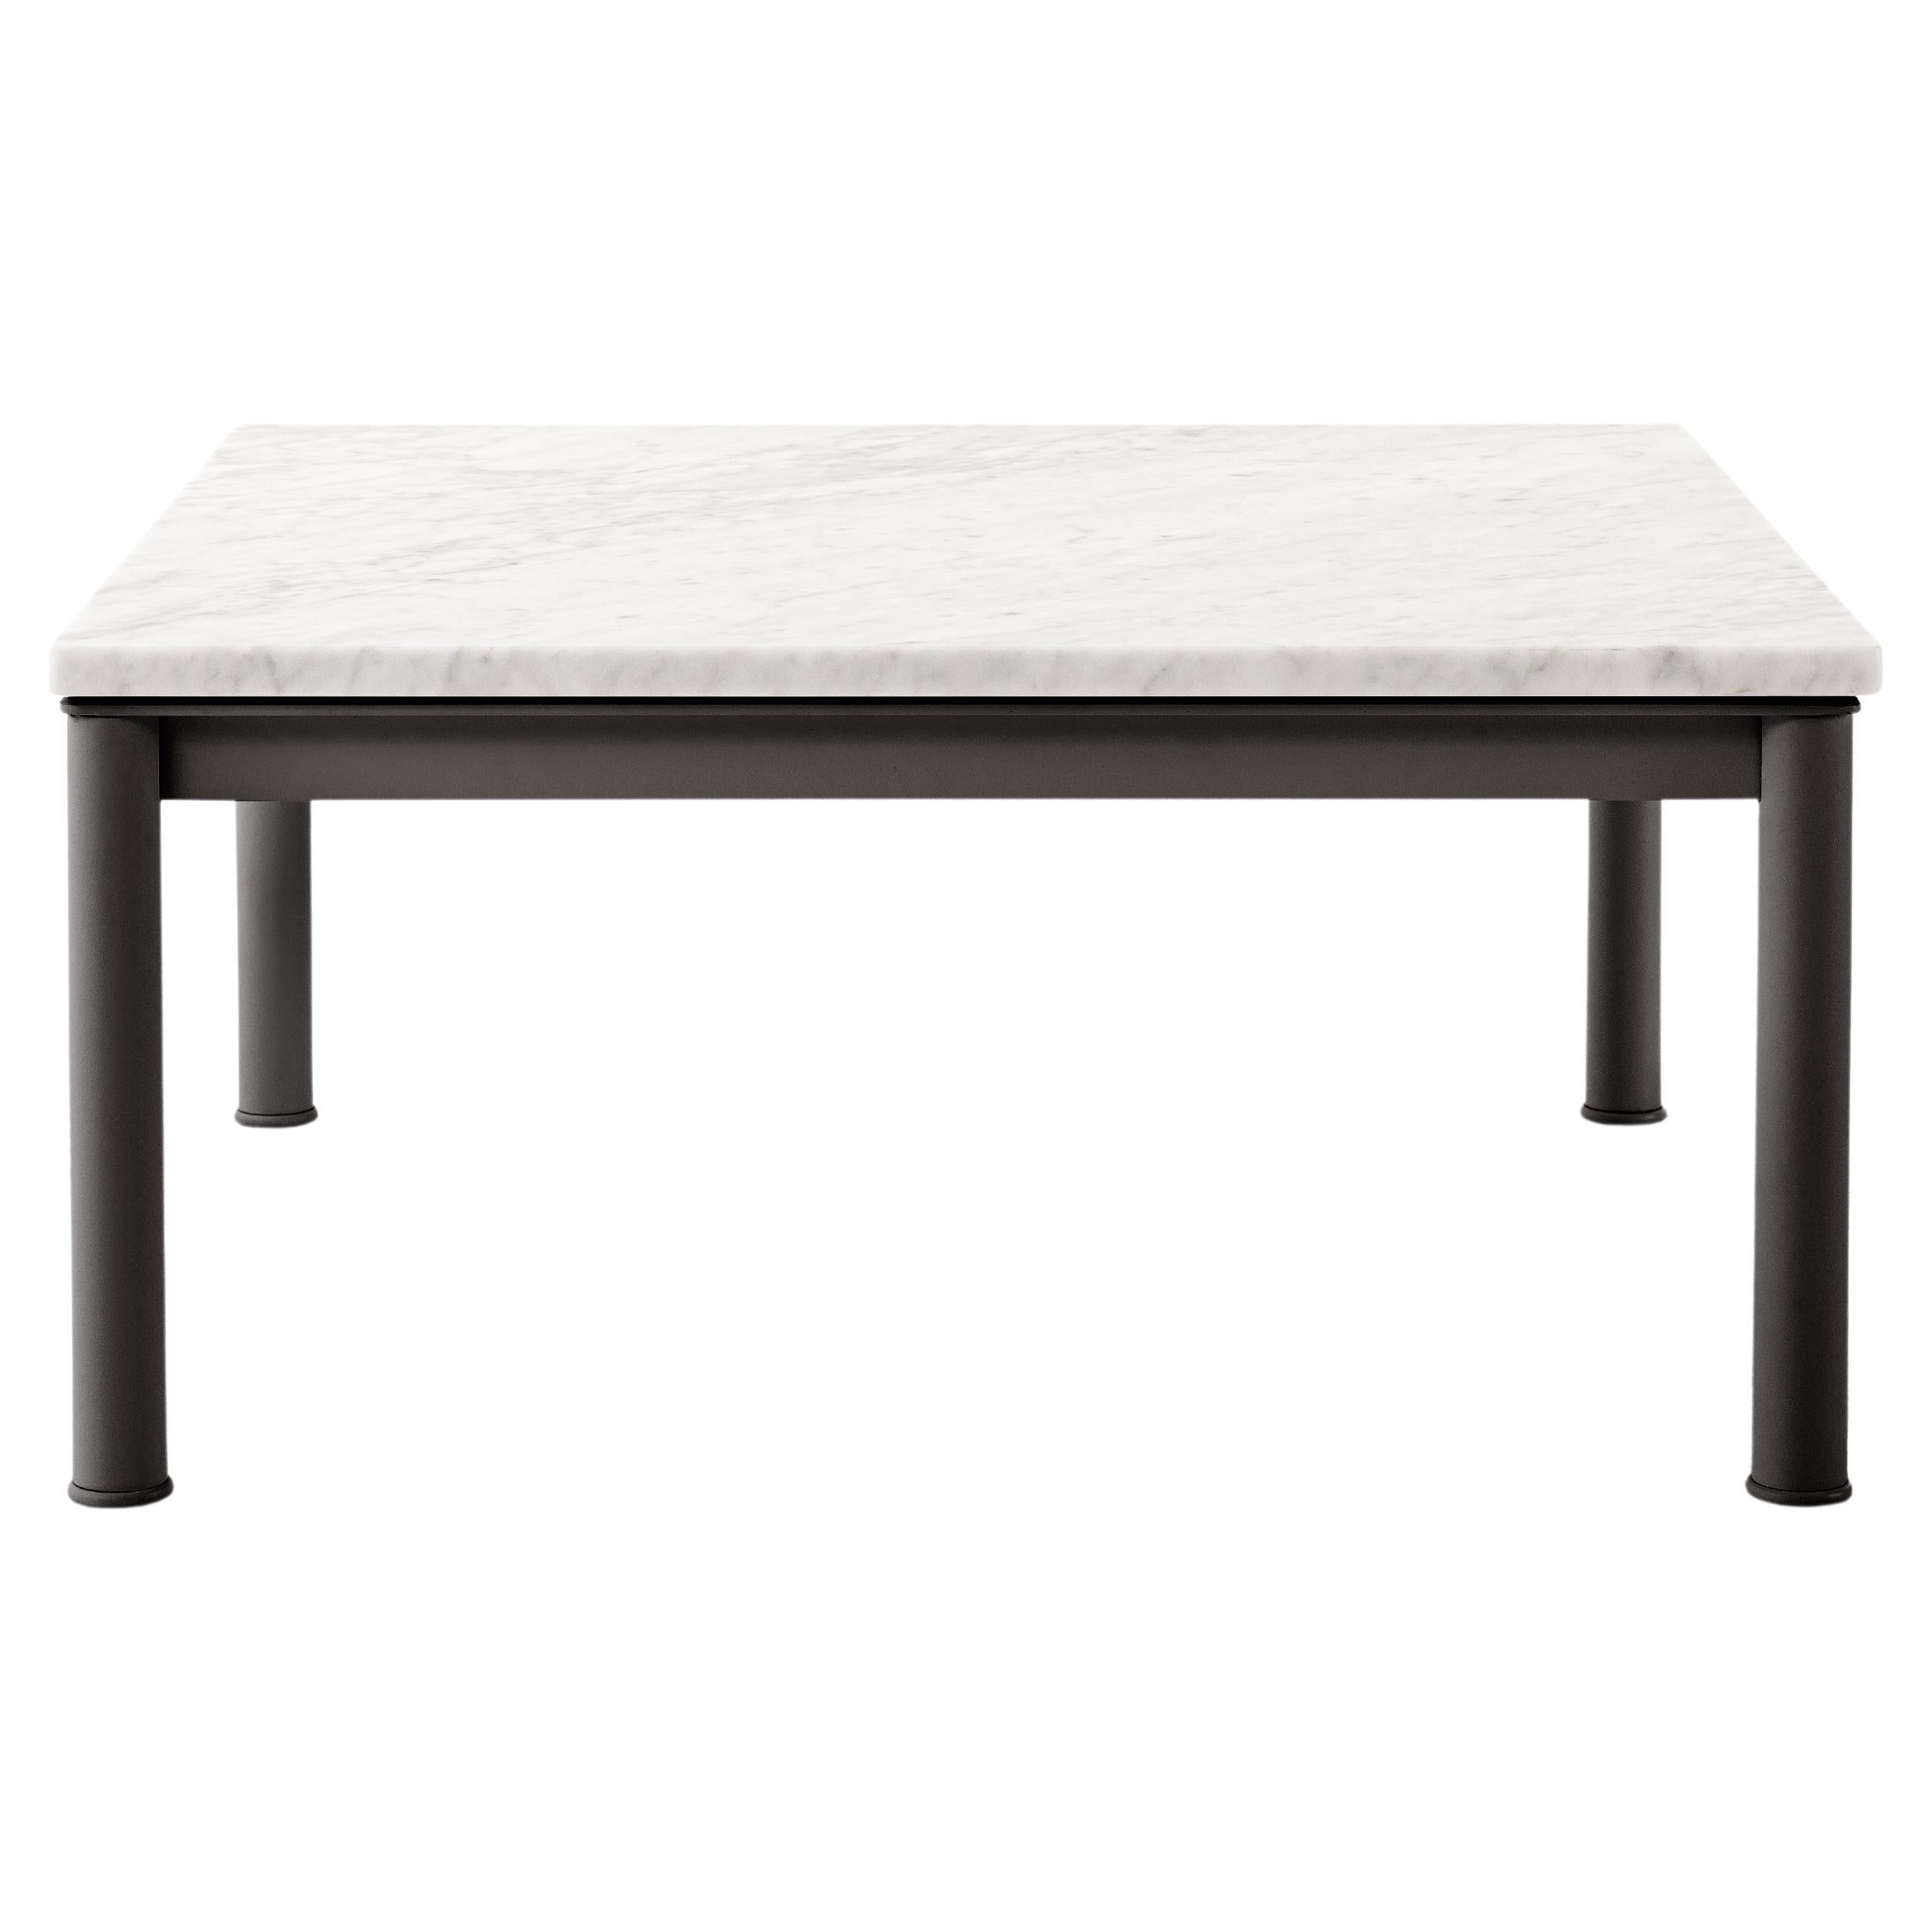 Table carrée d'extérieur ivoire texturé LC10 conçue par Le Corbusier, Pierre Jeanneret, Charlotte Perriand en 1929. Revisité par Perriand en 1984, et relancé par Cassina un an plus tard. Fabriqué par Cassina en Italie.

Le Corbusier, Charlotte